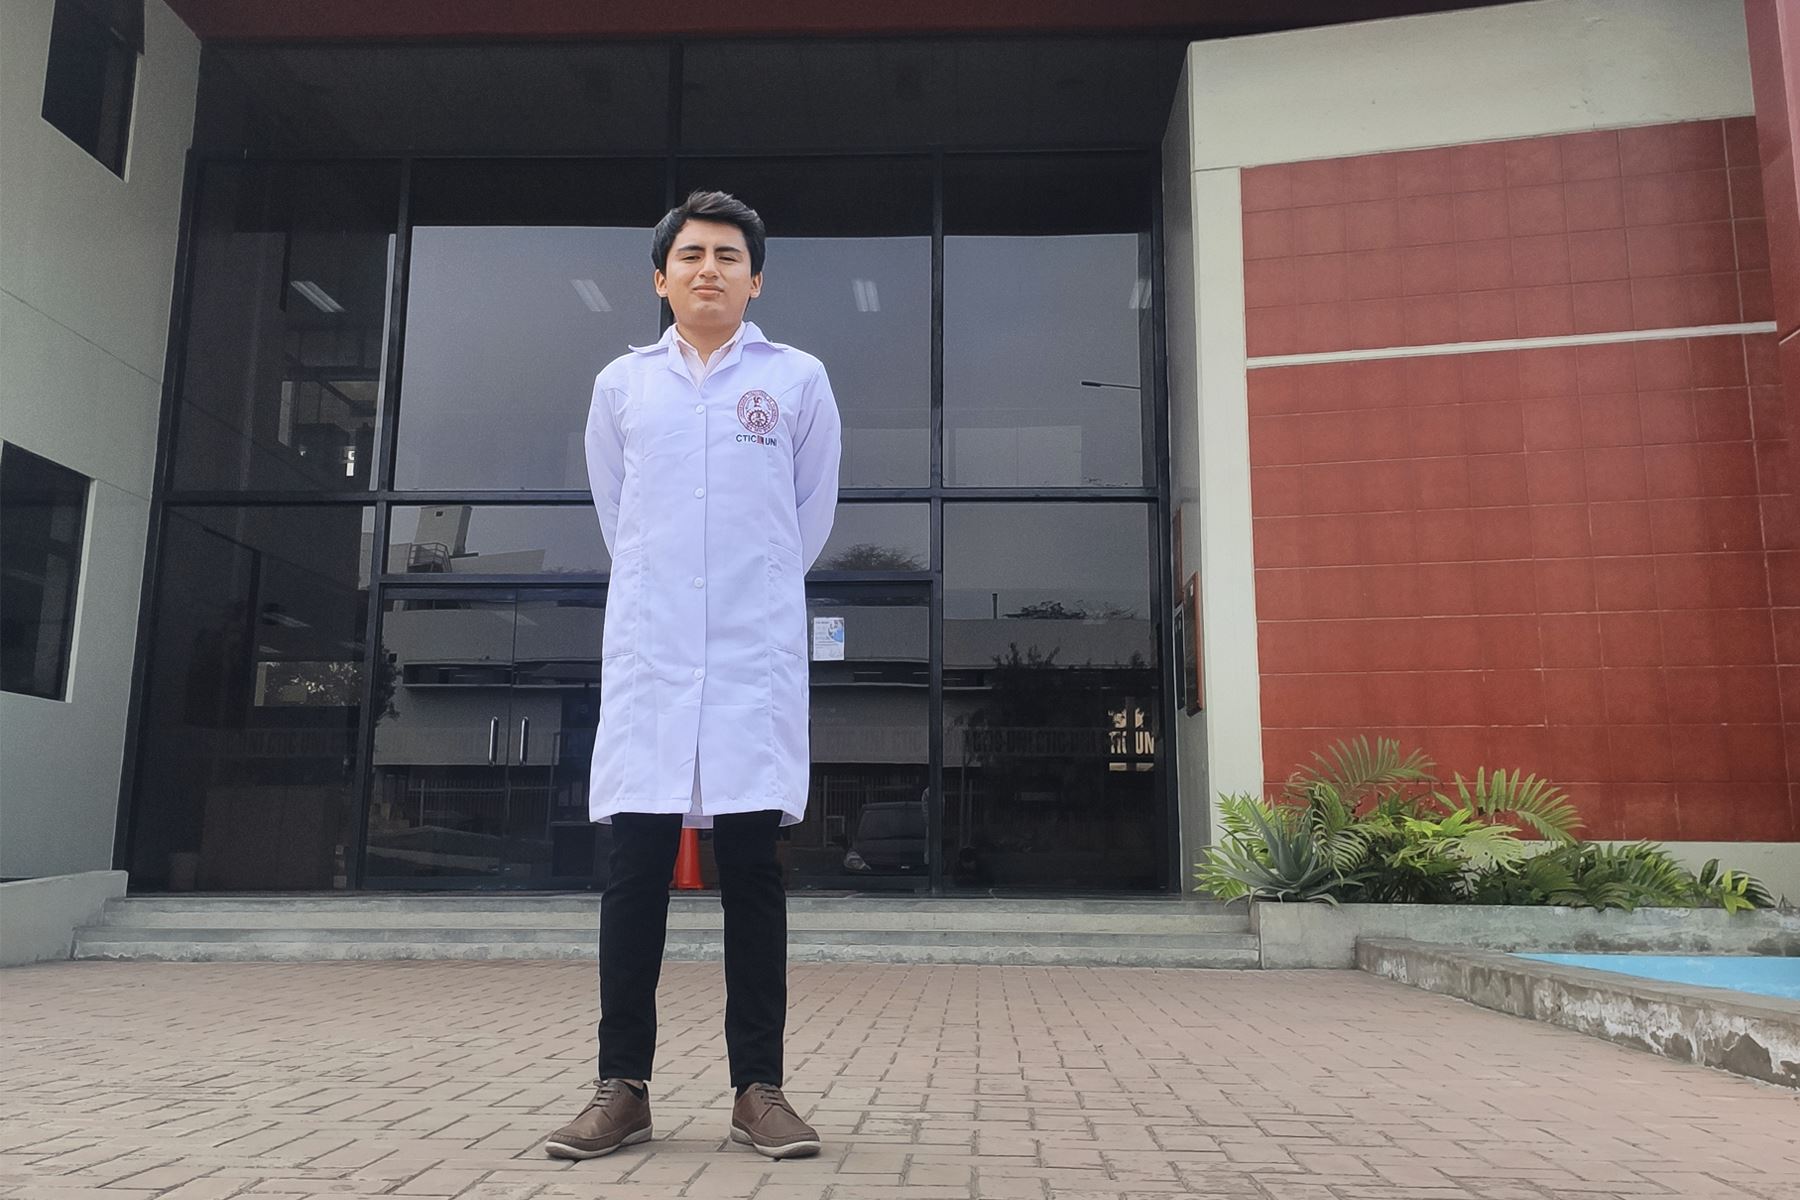 Omar Blas es uno de los veinte estudiantes seleccionados a nivel mundial para participar en programa de capacitación para la fabricación de nanosatélite en la Universidad de Nihon.